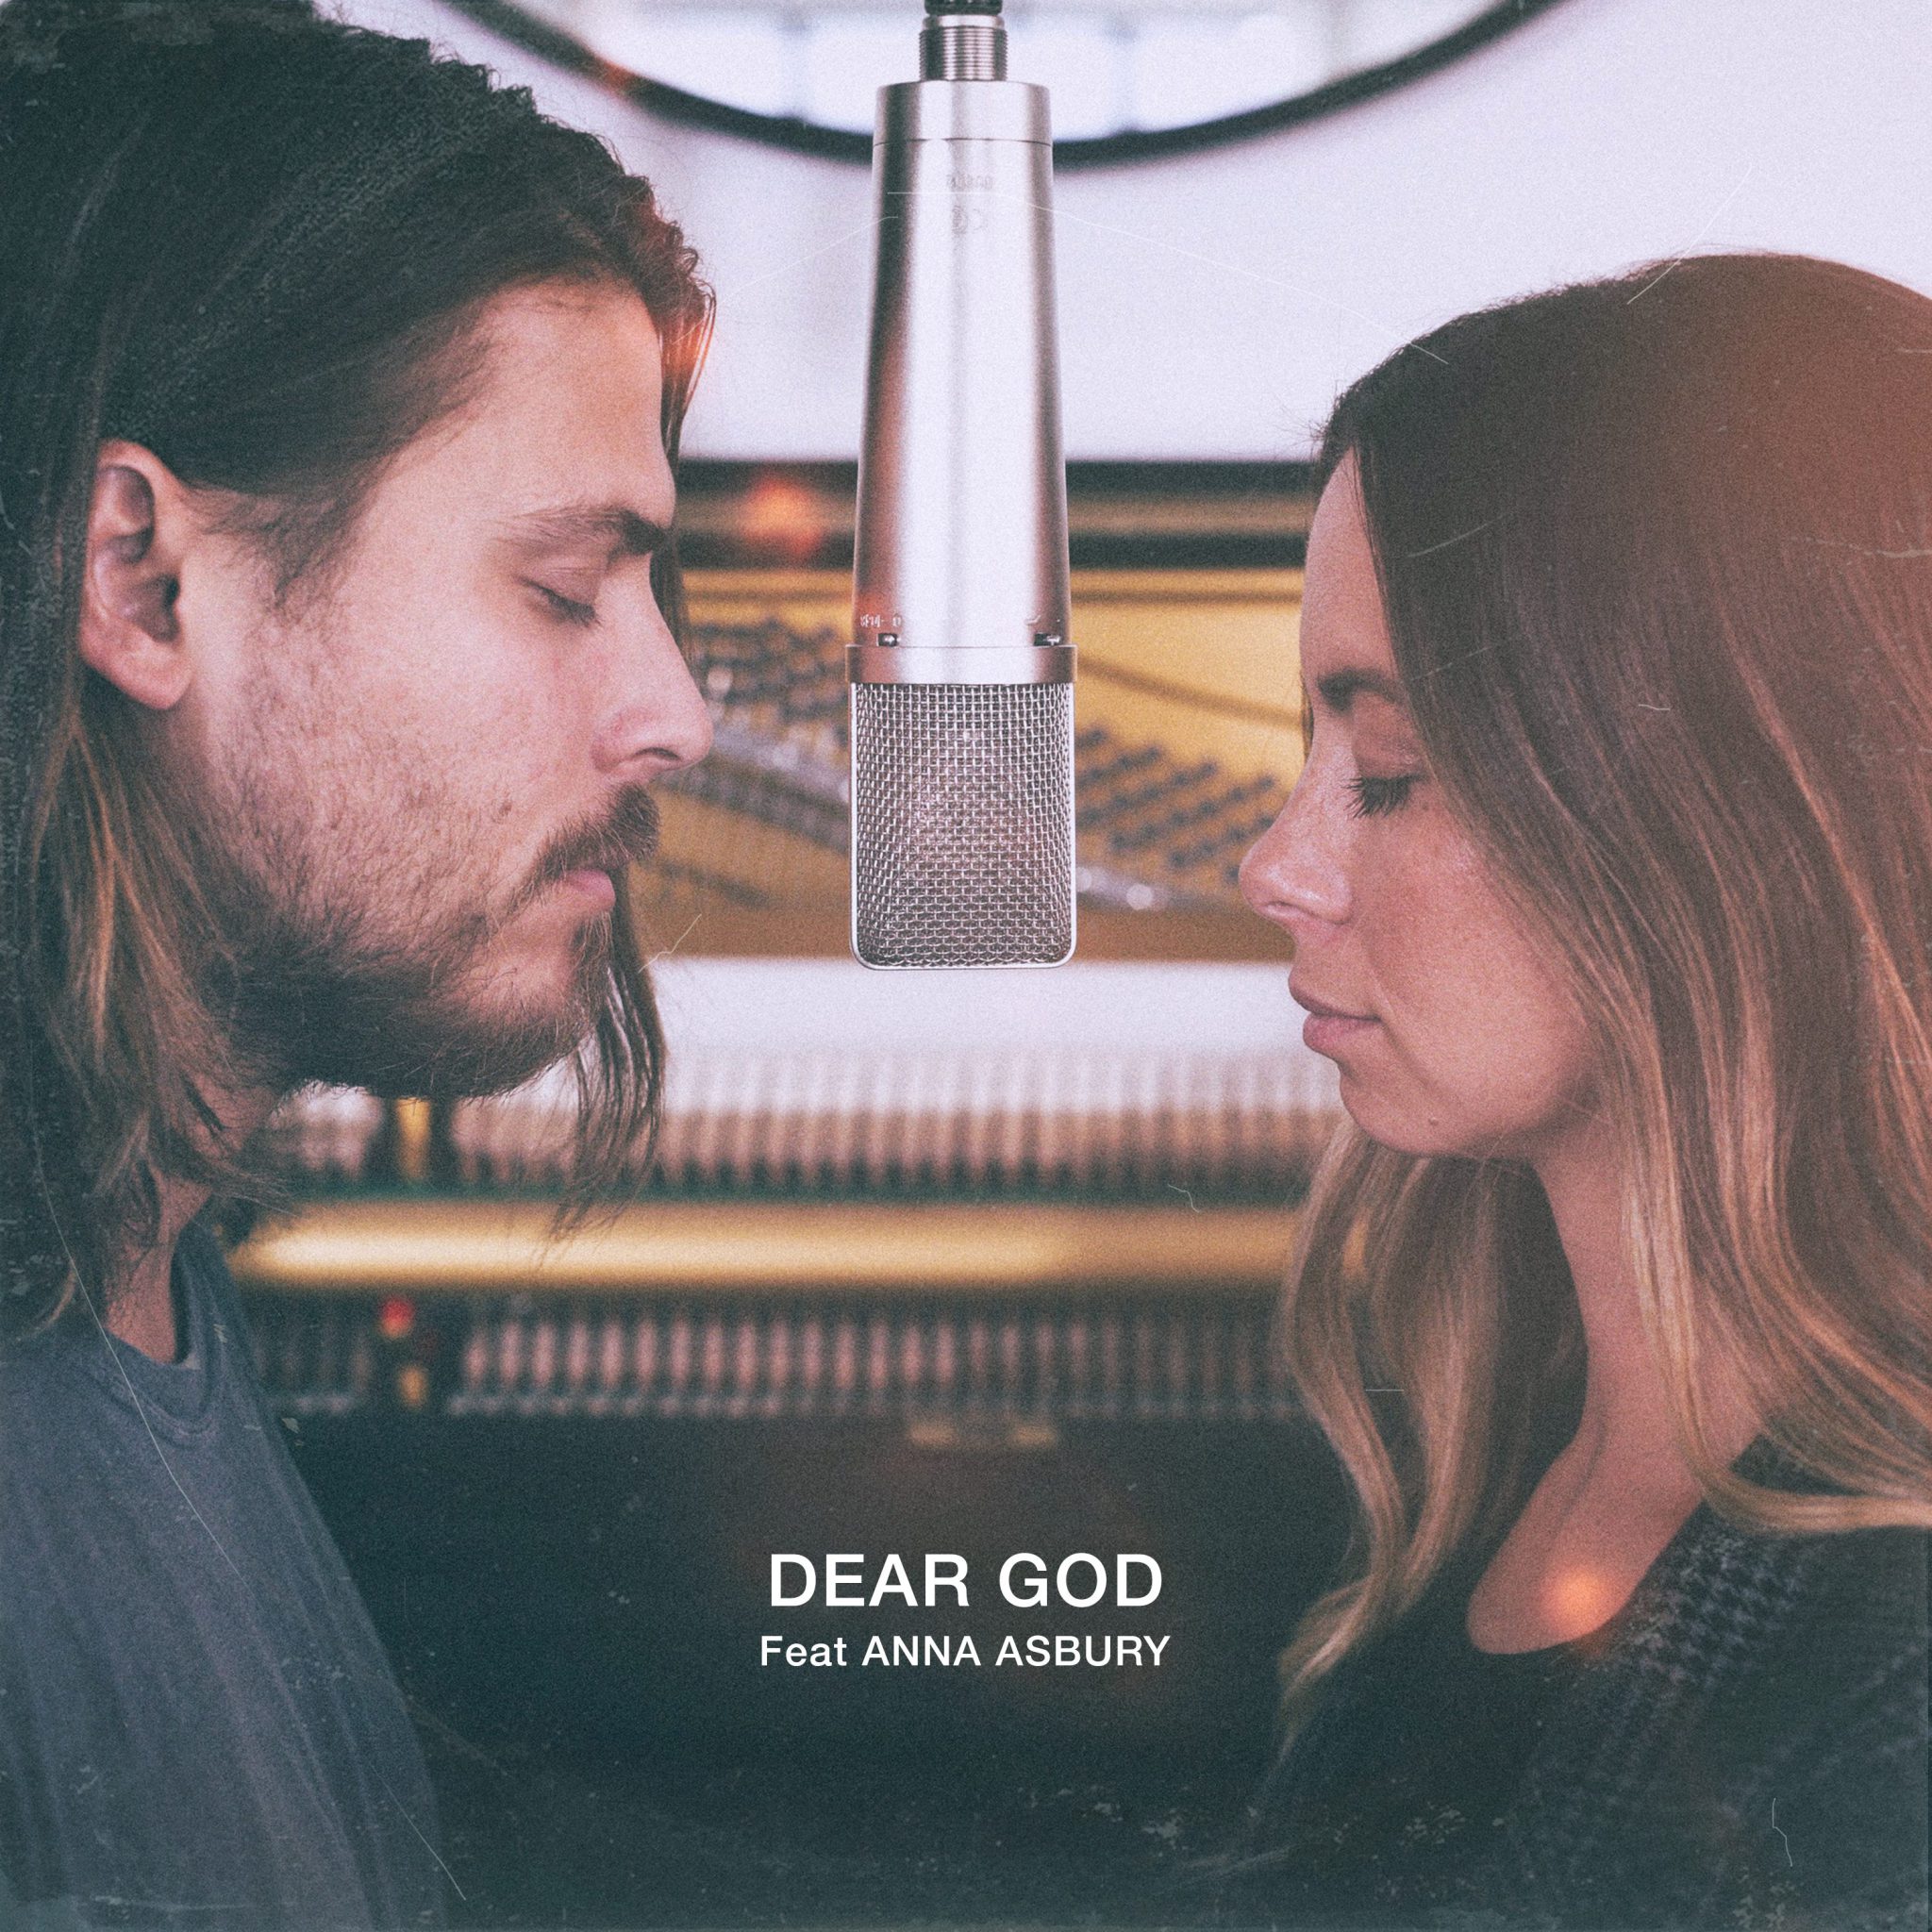 Cory & Anna Asbury/Bethel Music single “Dear God” on WorshipTeam